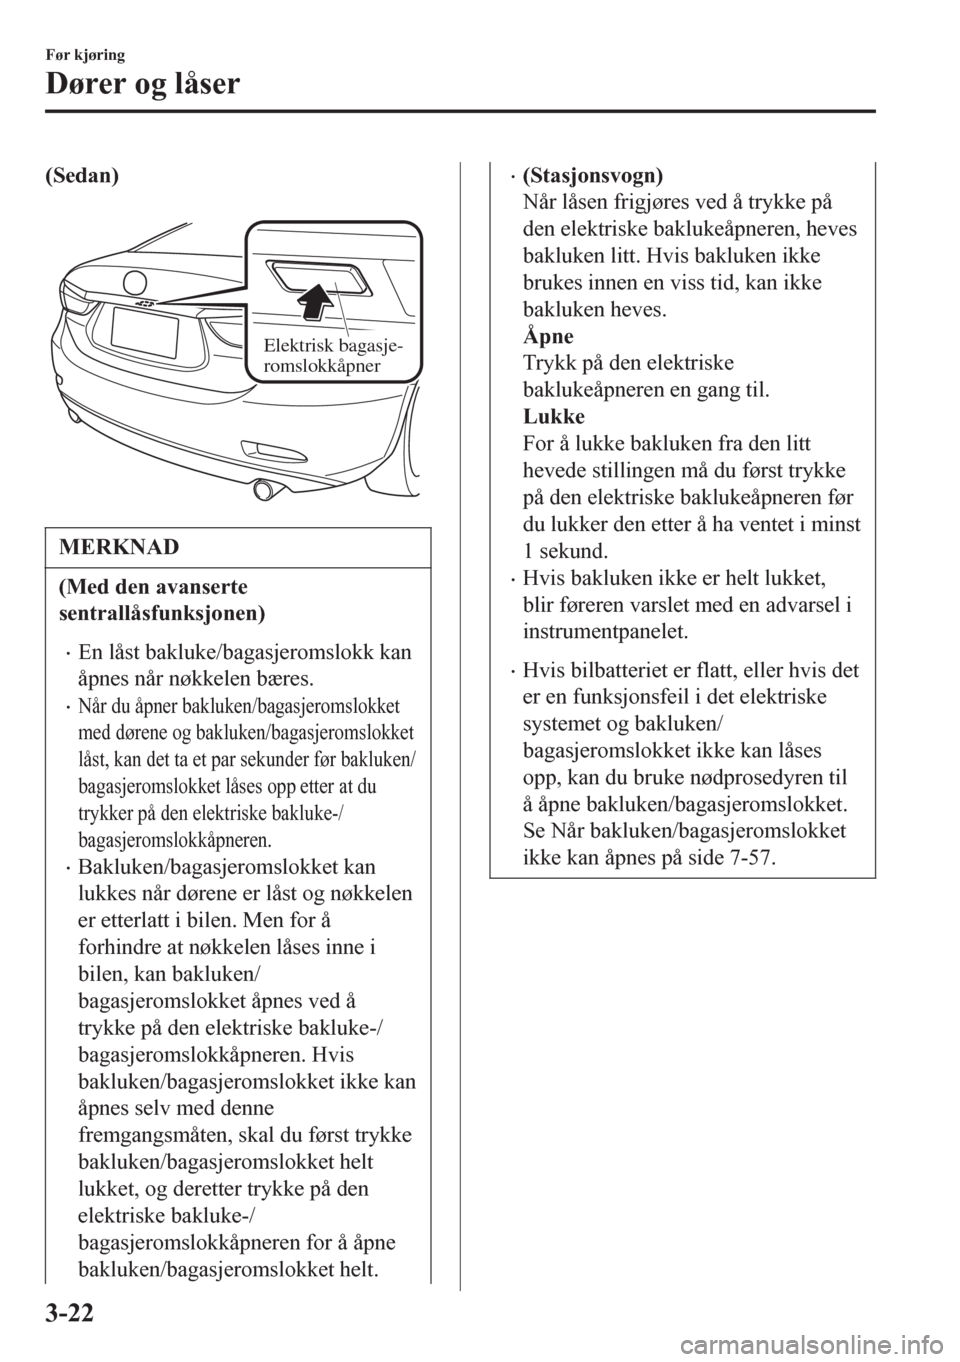 MAZDA MODEL 6 2016  Brukerhåndbok (in Norwegian) (Sedan)
 
Elektrisk bagasje-
romslokkåpner
MERKNAD
(Med den avanserte
sentrallåsfunksjonen)
•En låst bakluke/bagasjeromslokk kan
åpnes når nøkkelen bæres.
•Når du åpner bakluken/bagasjero